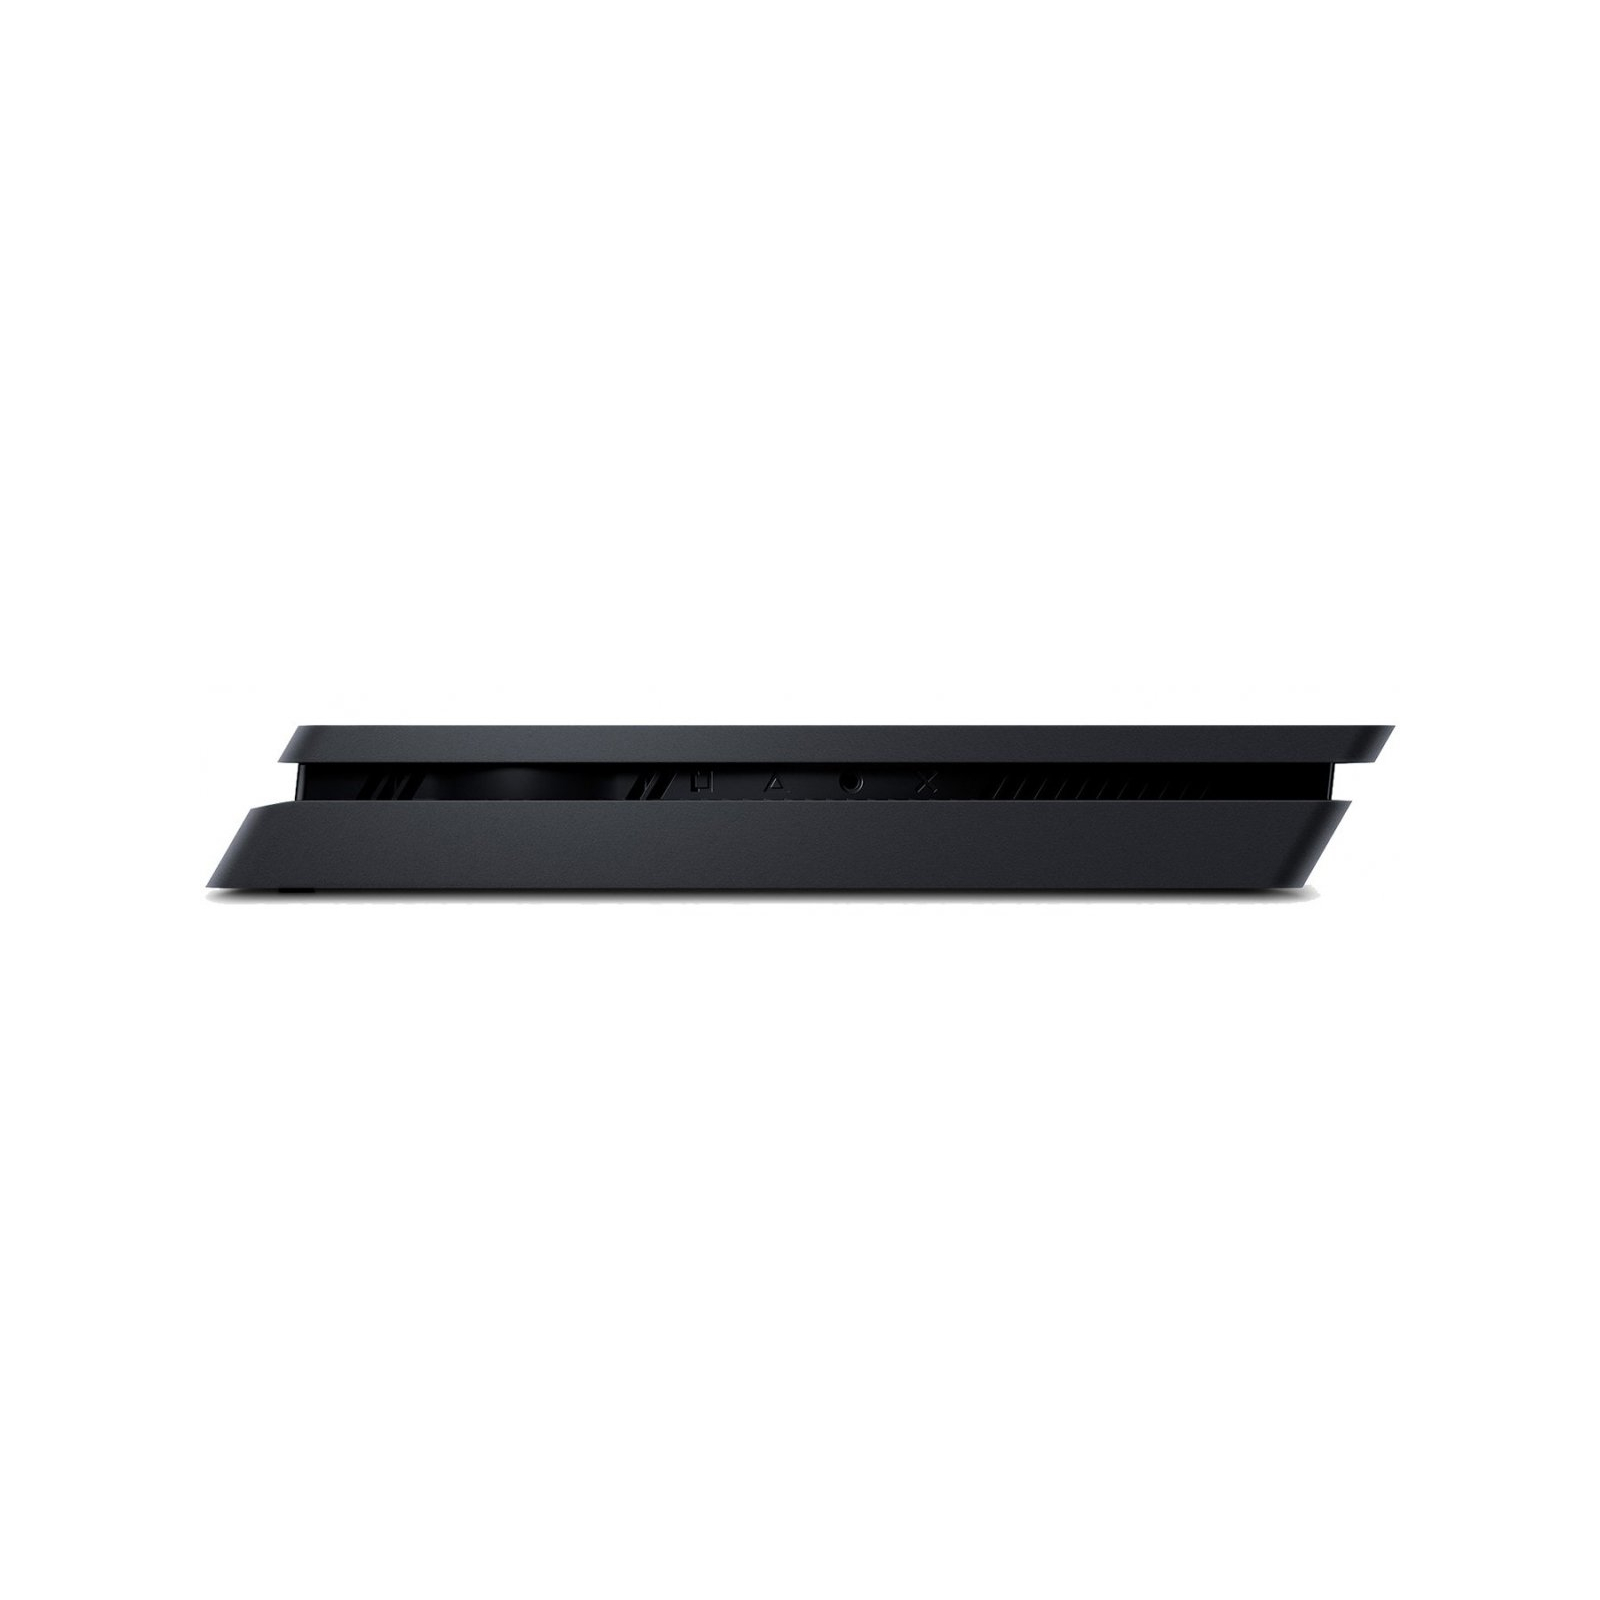 Игровая консоль Sony PlayStation 4 Slim 1Tb Black (Destiny 2) (9896265) изображение 5